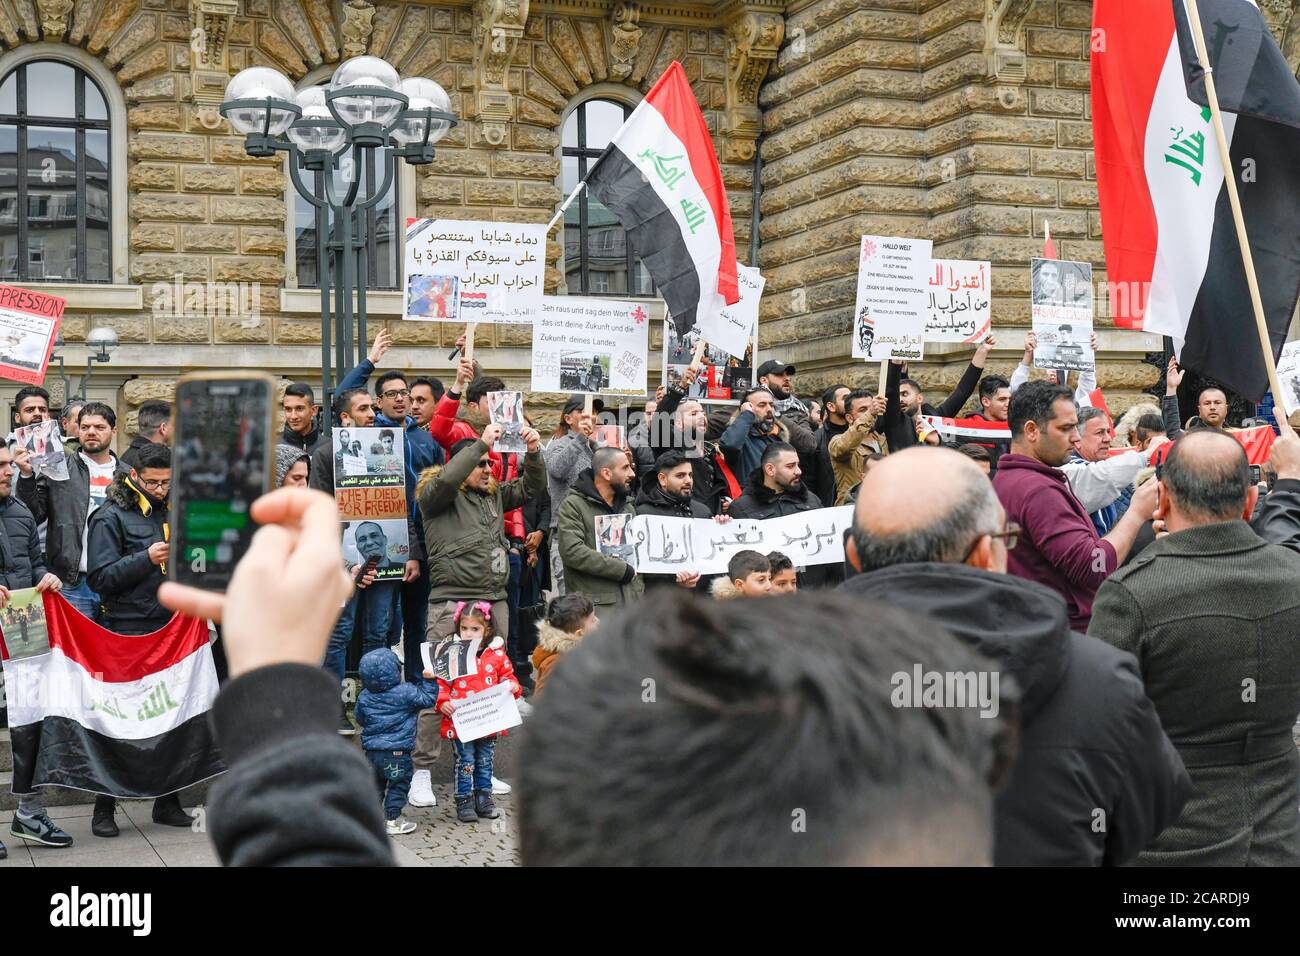 Manifestazione contro la violenza contro i manifestanti pacifici in Iraq, Amburgo, Germania, 06 ottobre 2019. Foto Stock